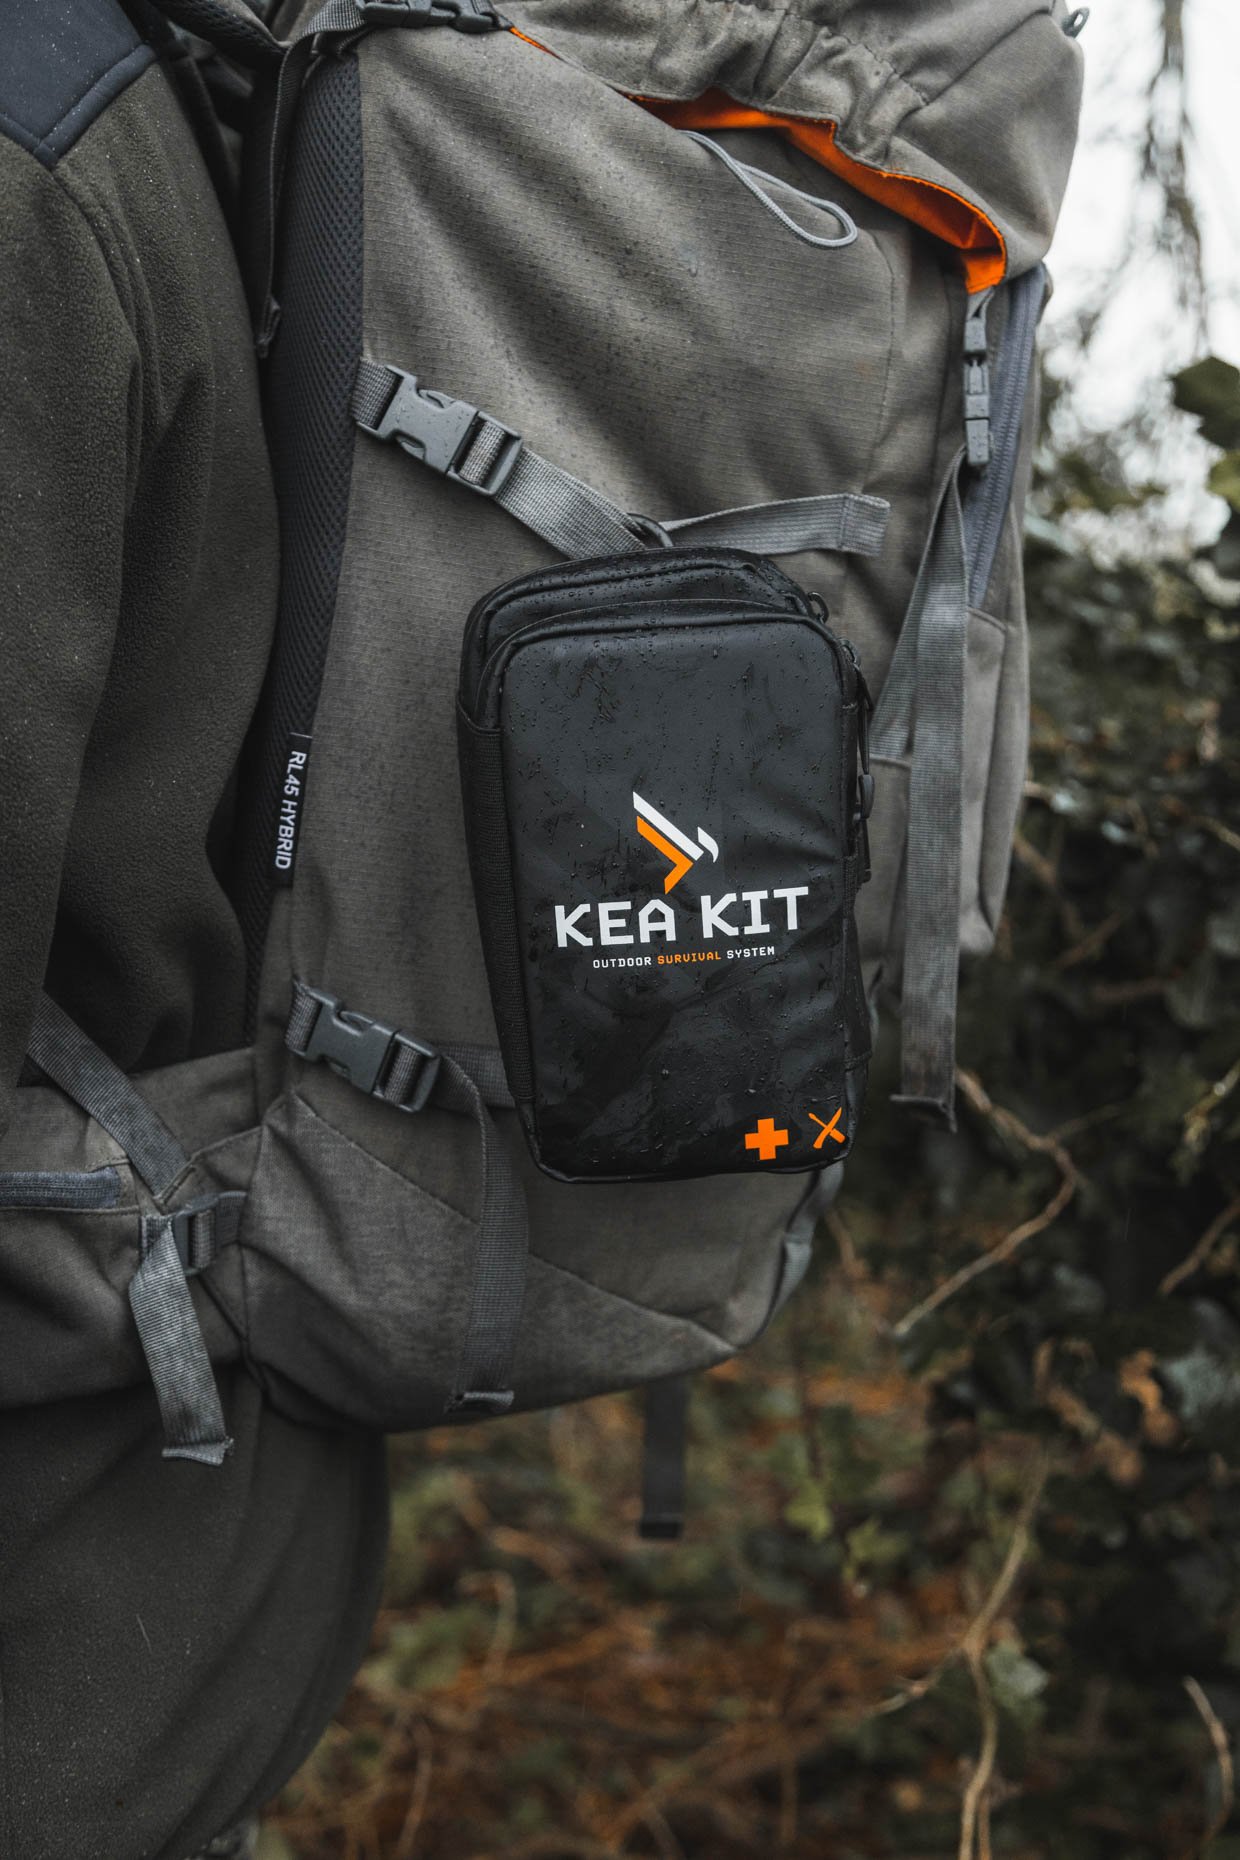 KEA KIT Outdoor Survival Kits